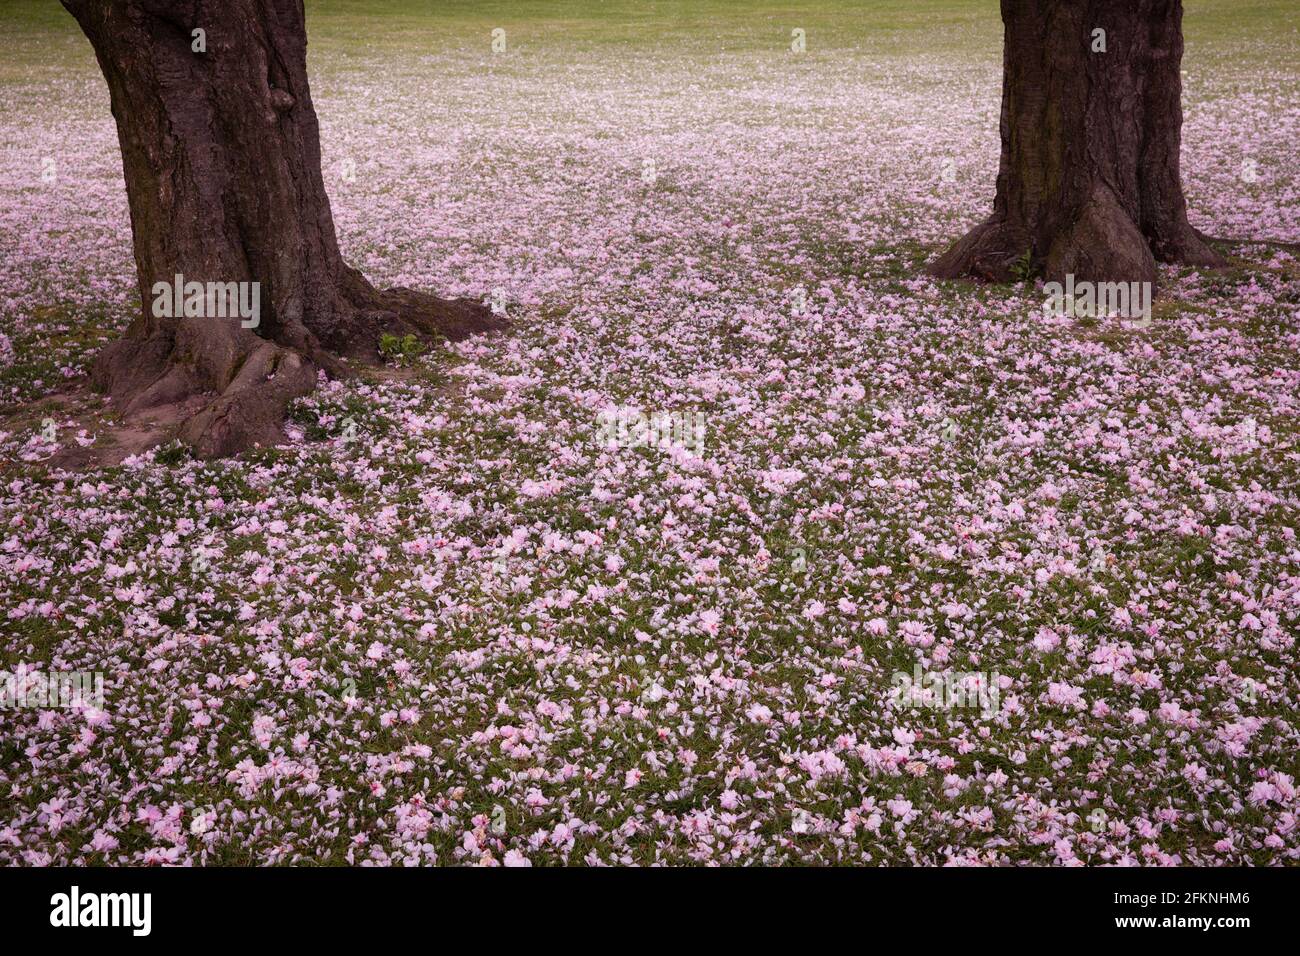 Des pétales soufflés de cerisiers se trouvent sur le sol dans le parc du Rhin dans le quartier Deutz, espace de loisirs local, Cologne, Allemagne. Abgewehte Blu Banque D'Images